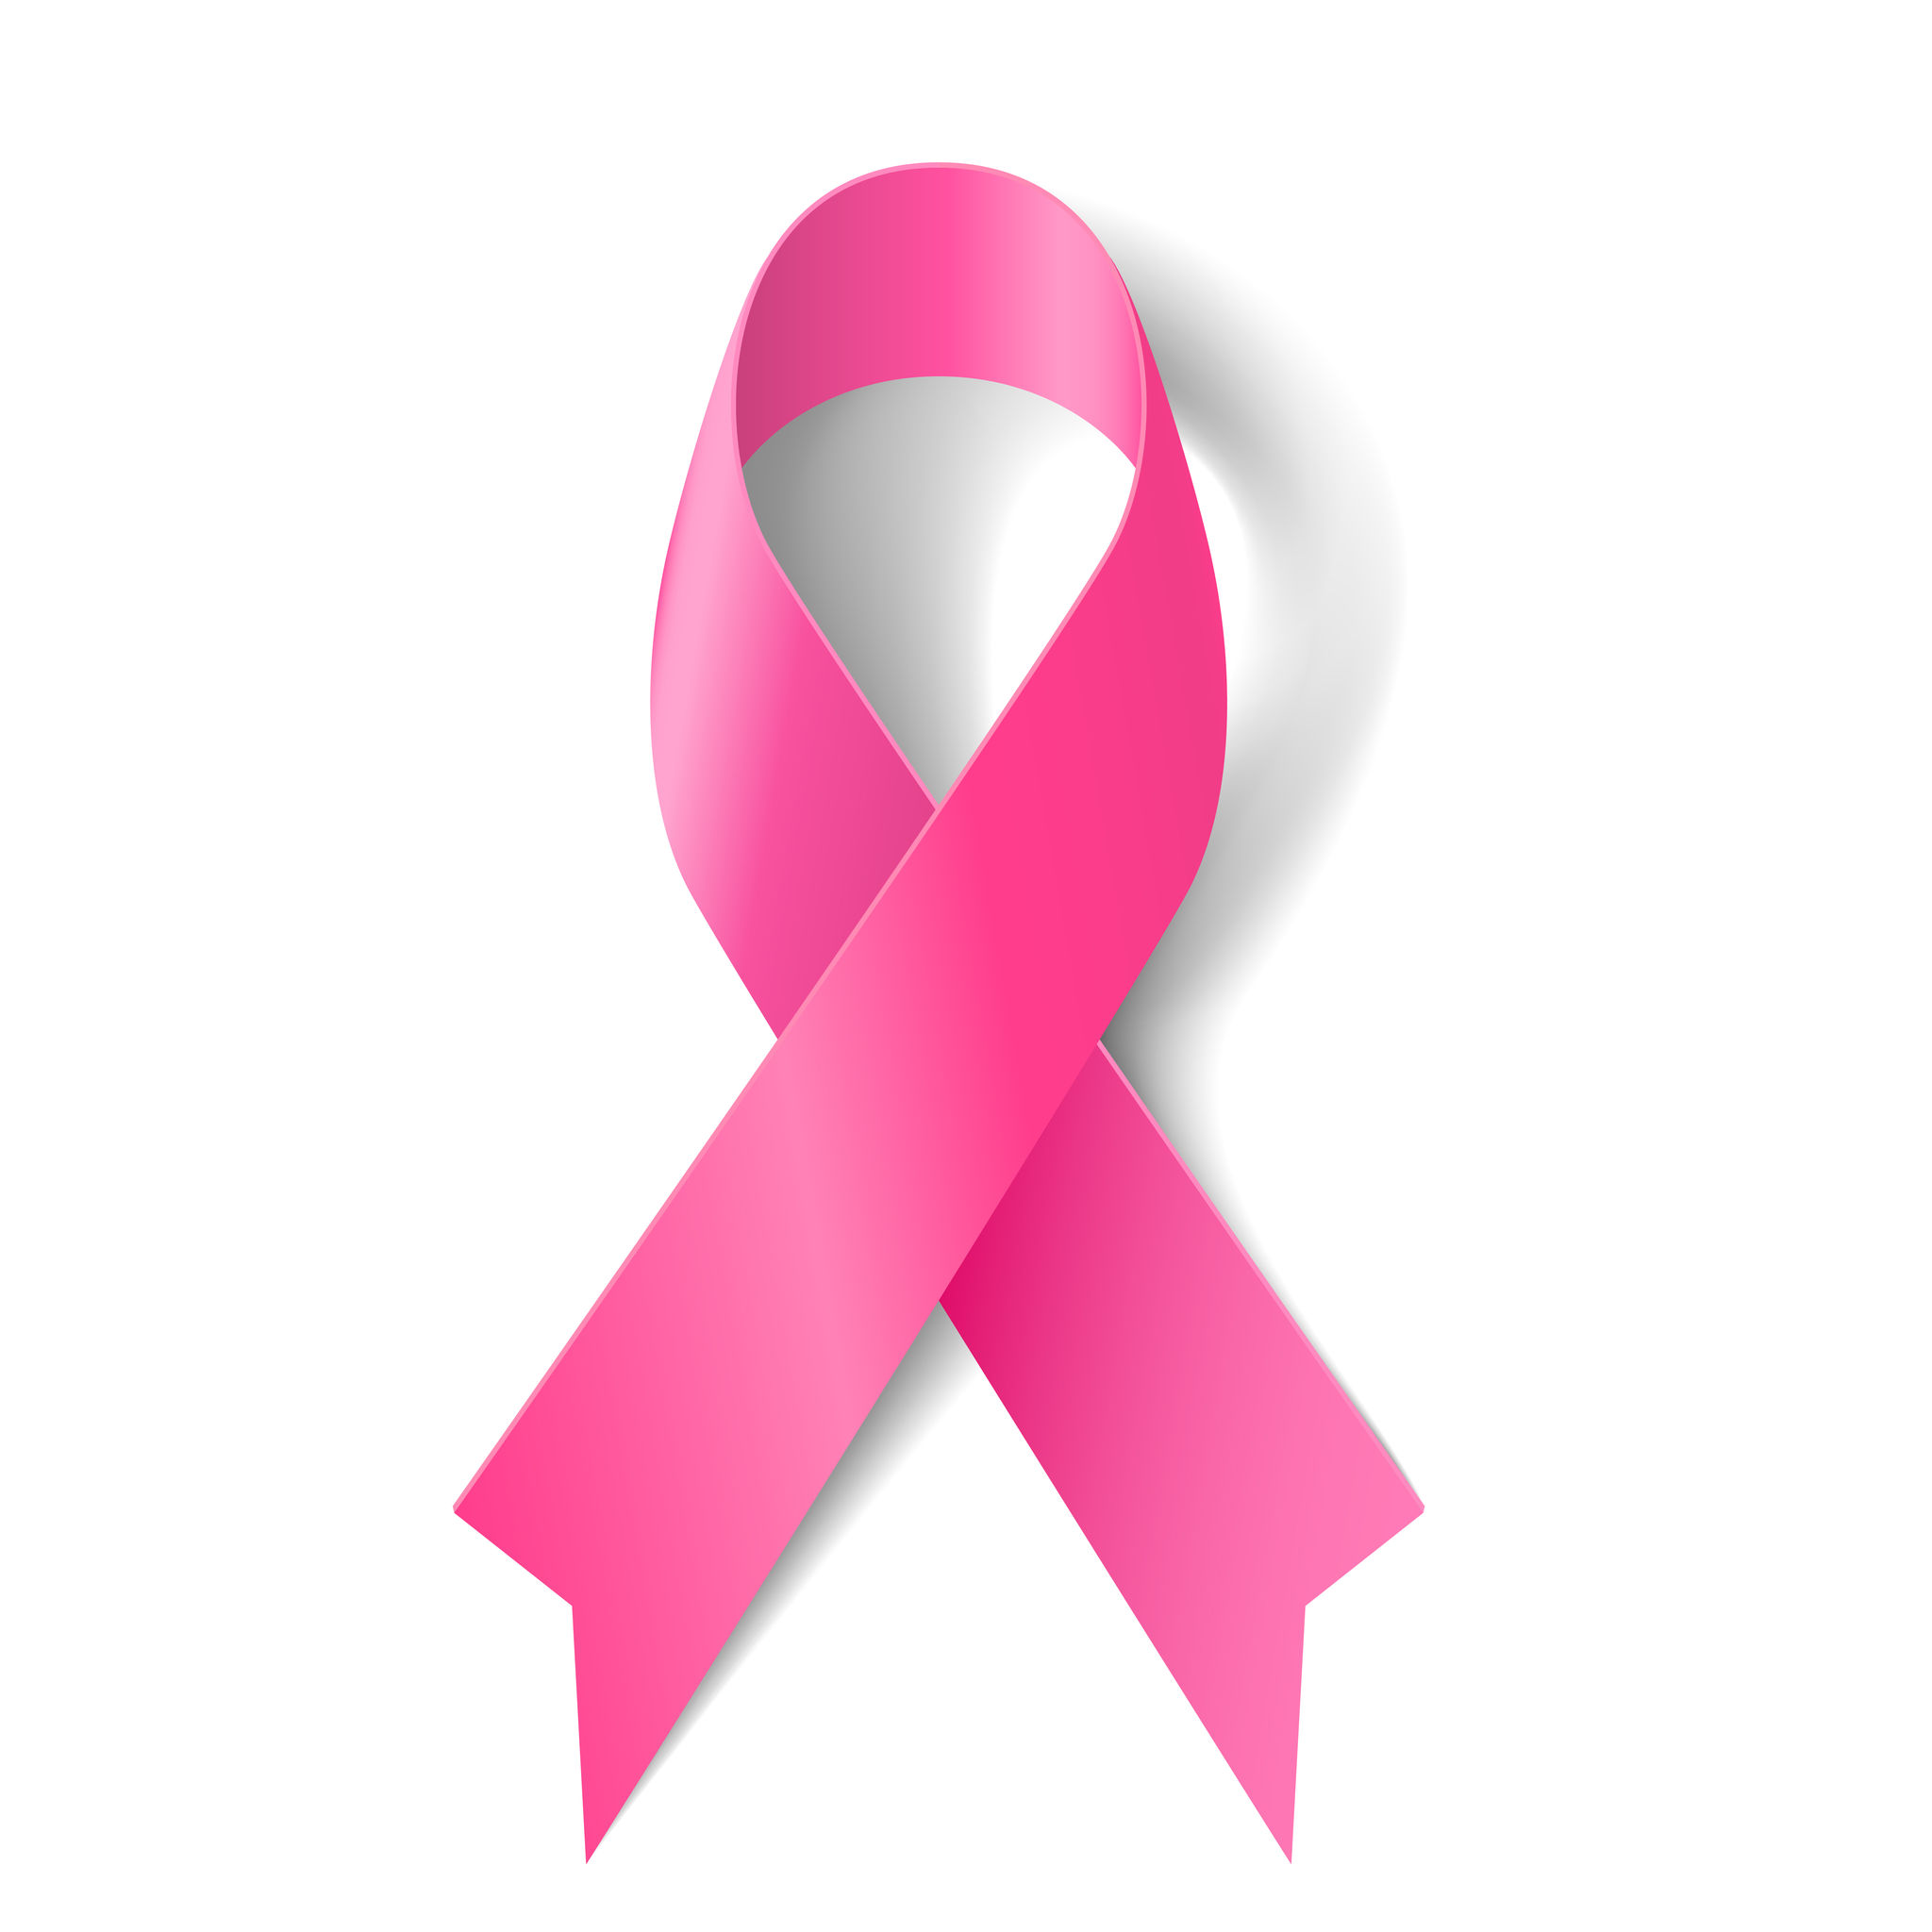 Campaña concienciación del cáncer de mama de Aveda